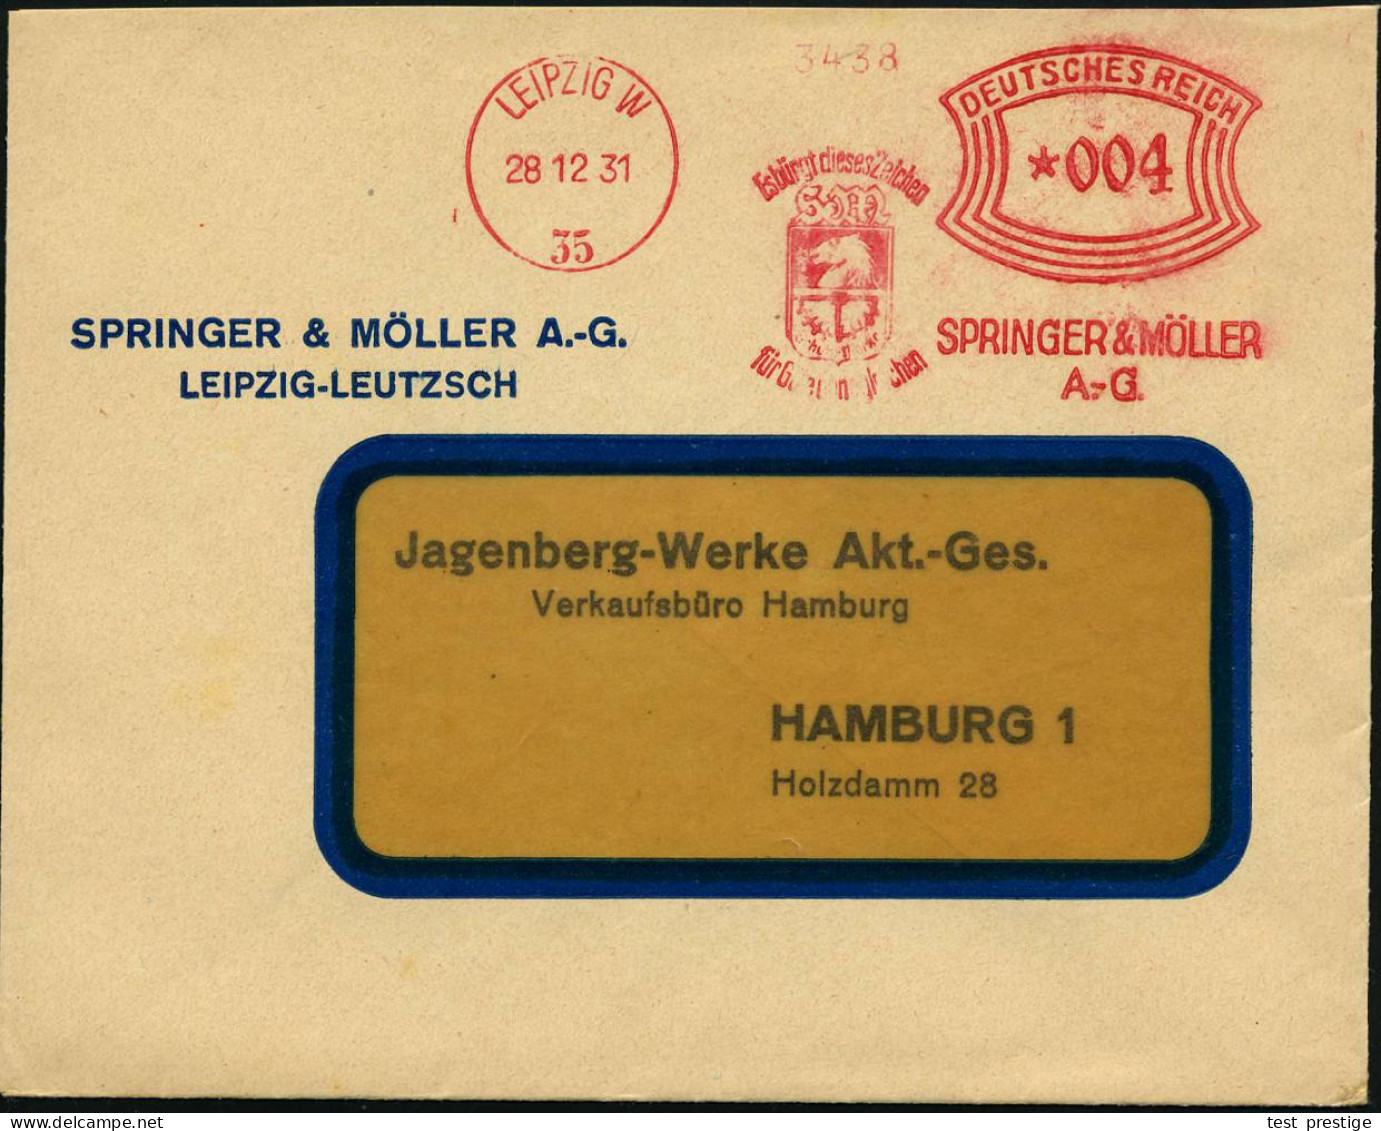 LEIPZIG W/ 35/ Es Bürgt Dieses Zeichen../ SPRINGER & MÖLLER/ A.-G. 1931 (28.12.) AFS Francotyp (Firmen-Logo) = Springer  - Echecs